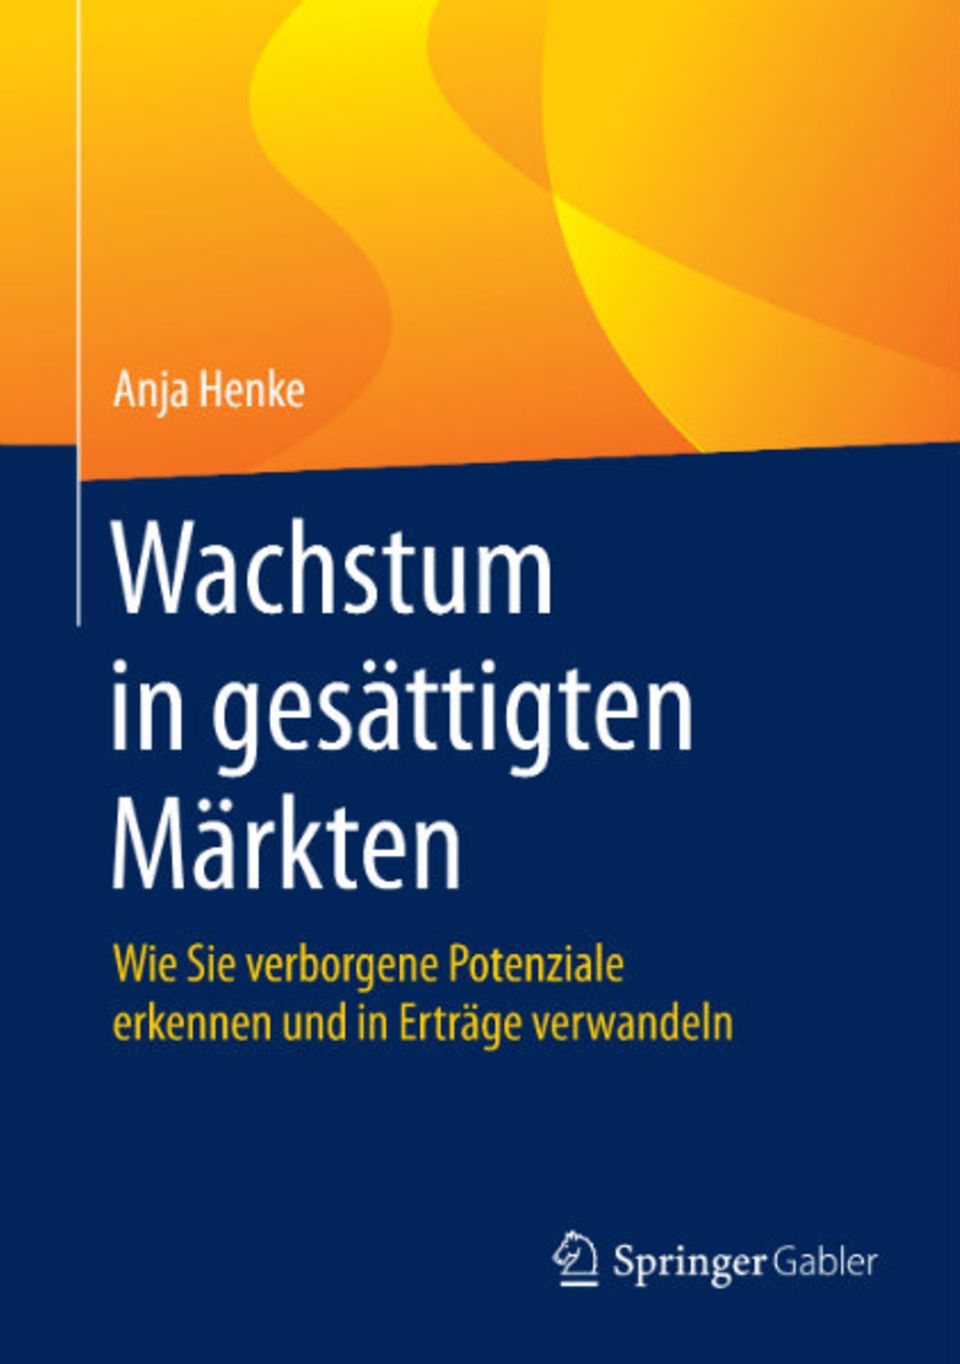 Anja Henkes Buch "Wachstum in gesättigten Märkten" ist bei Springer Gabler erschienen